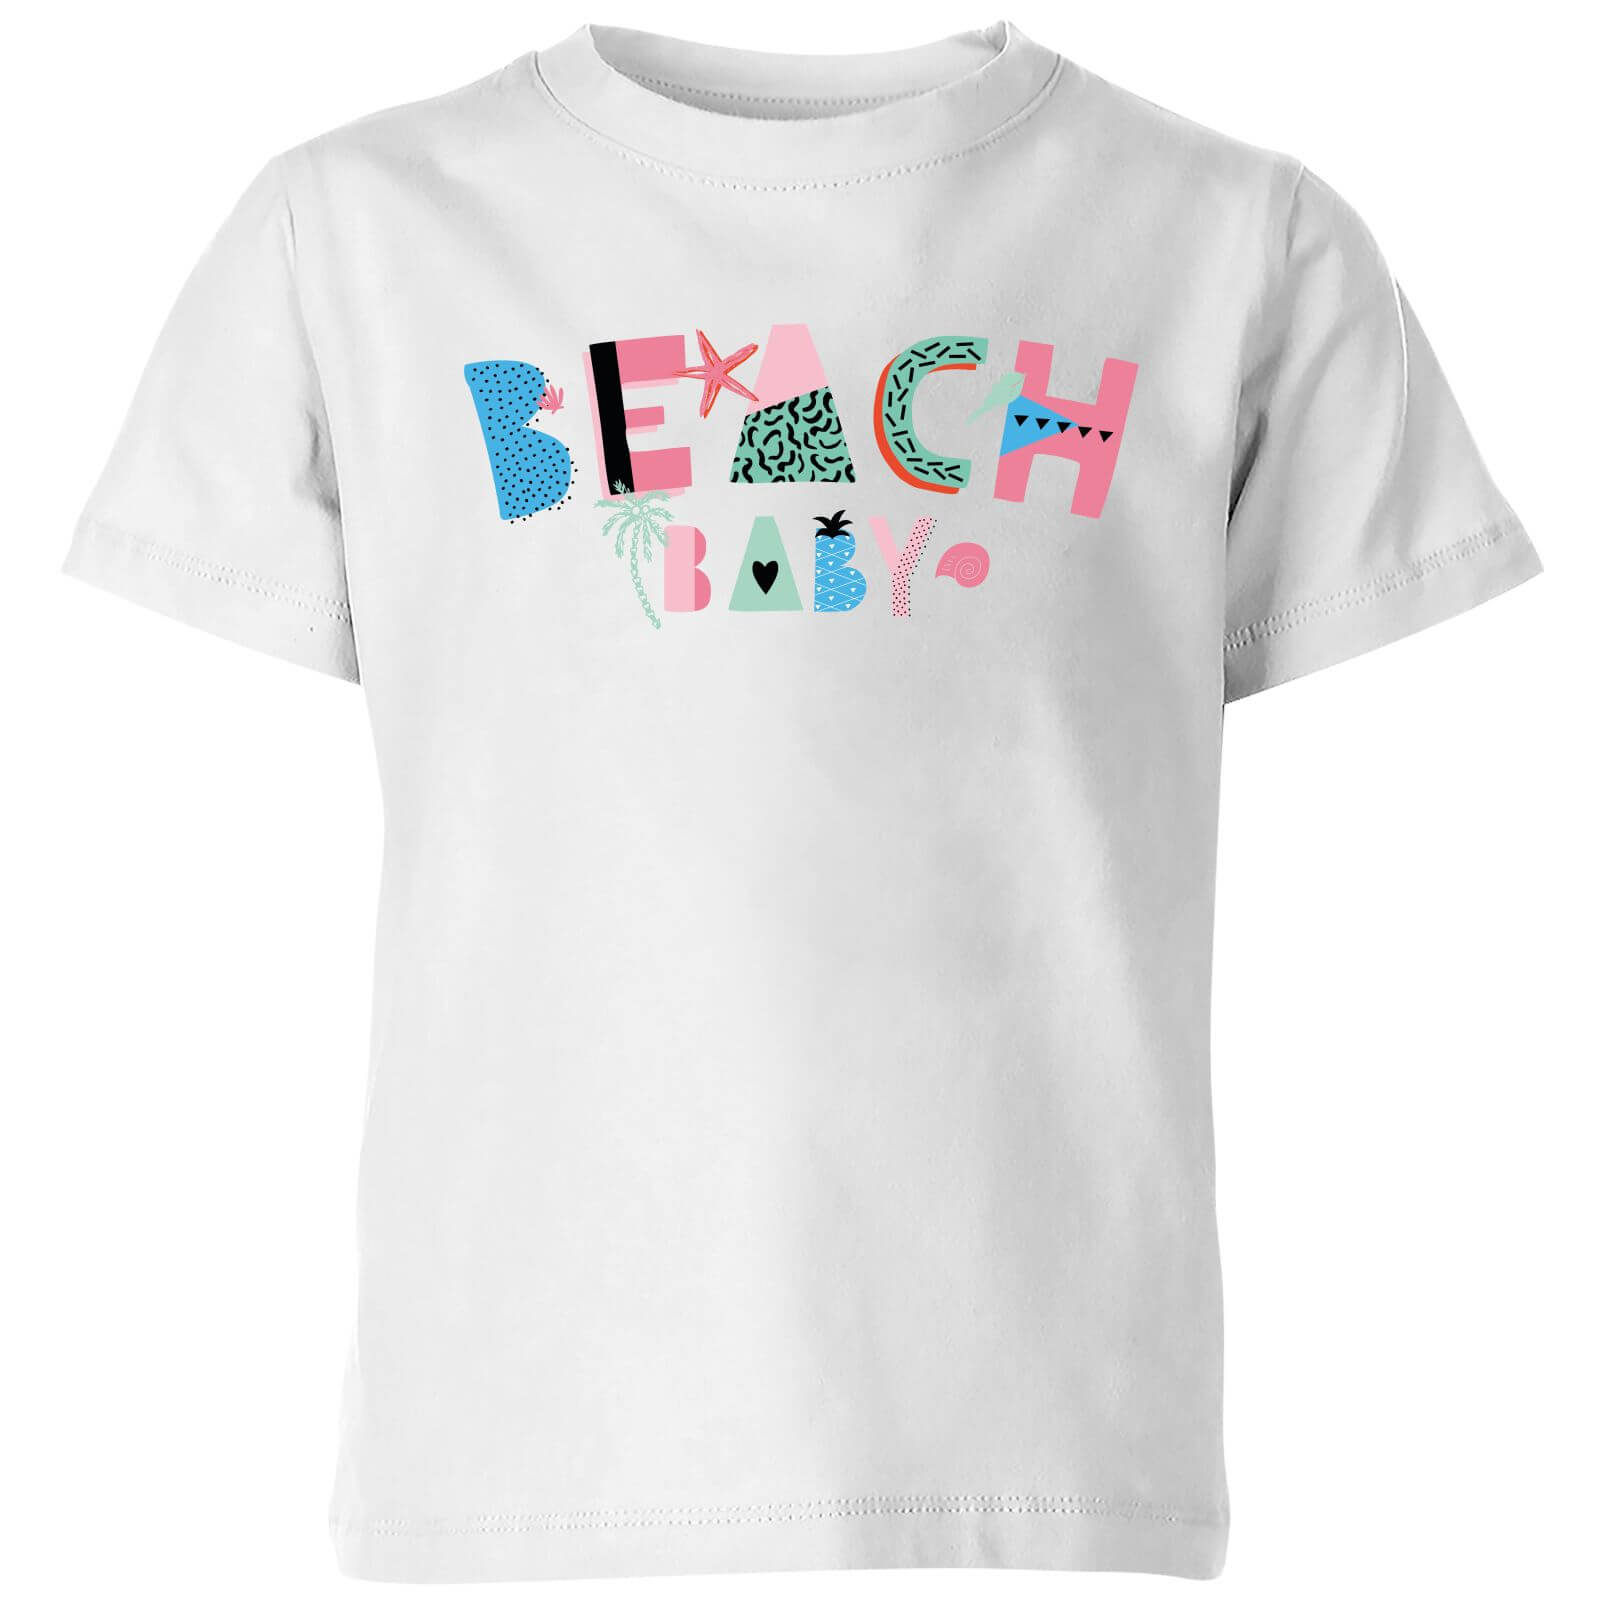 My Little Rascal Beach Baby Kids' T-Shirt - White - 3-4 Years - White